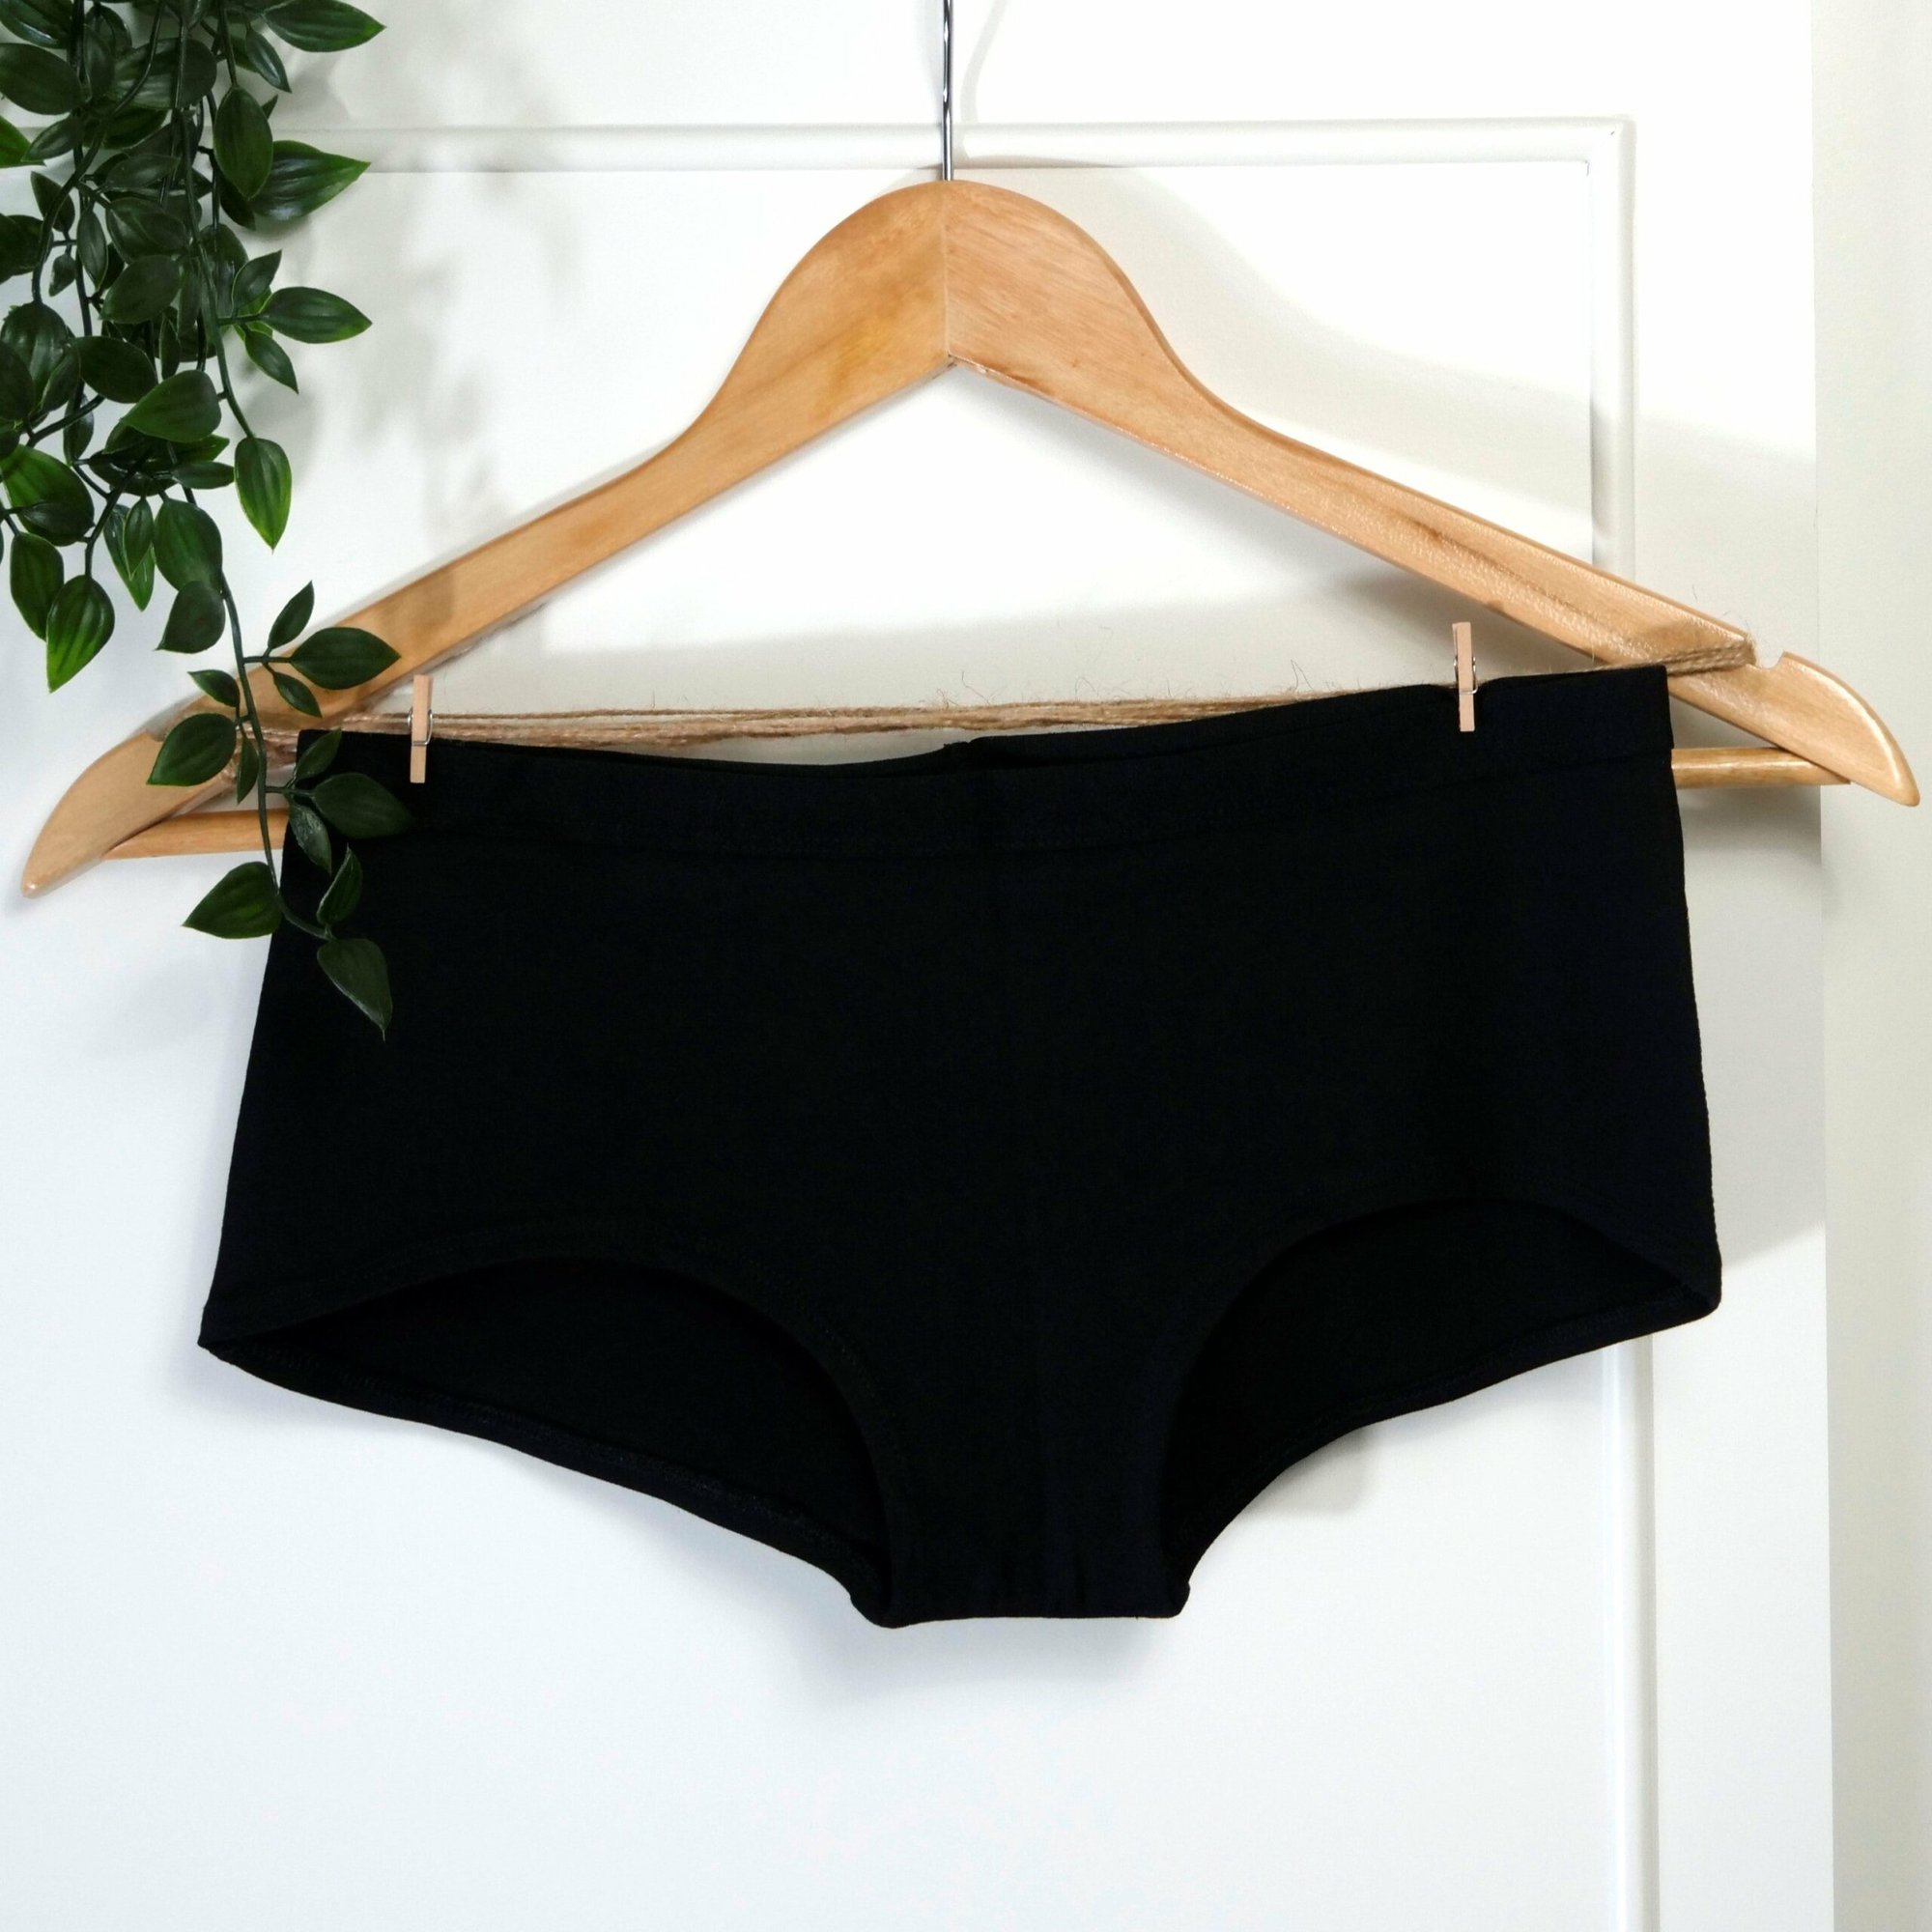 Women's Organic Cotton Boy Shorts – Y.O.U underwear